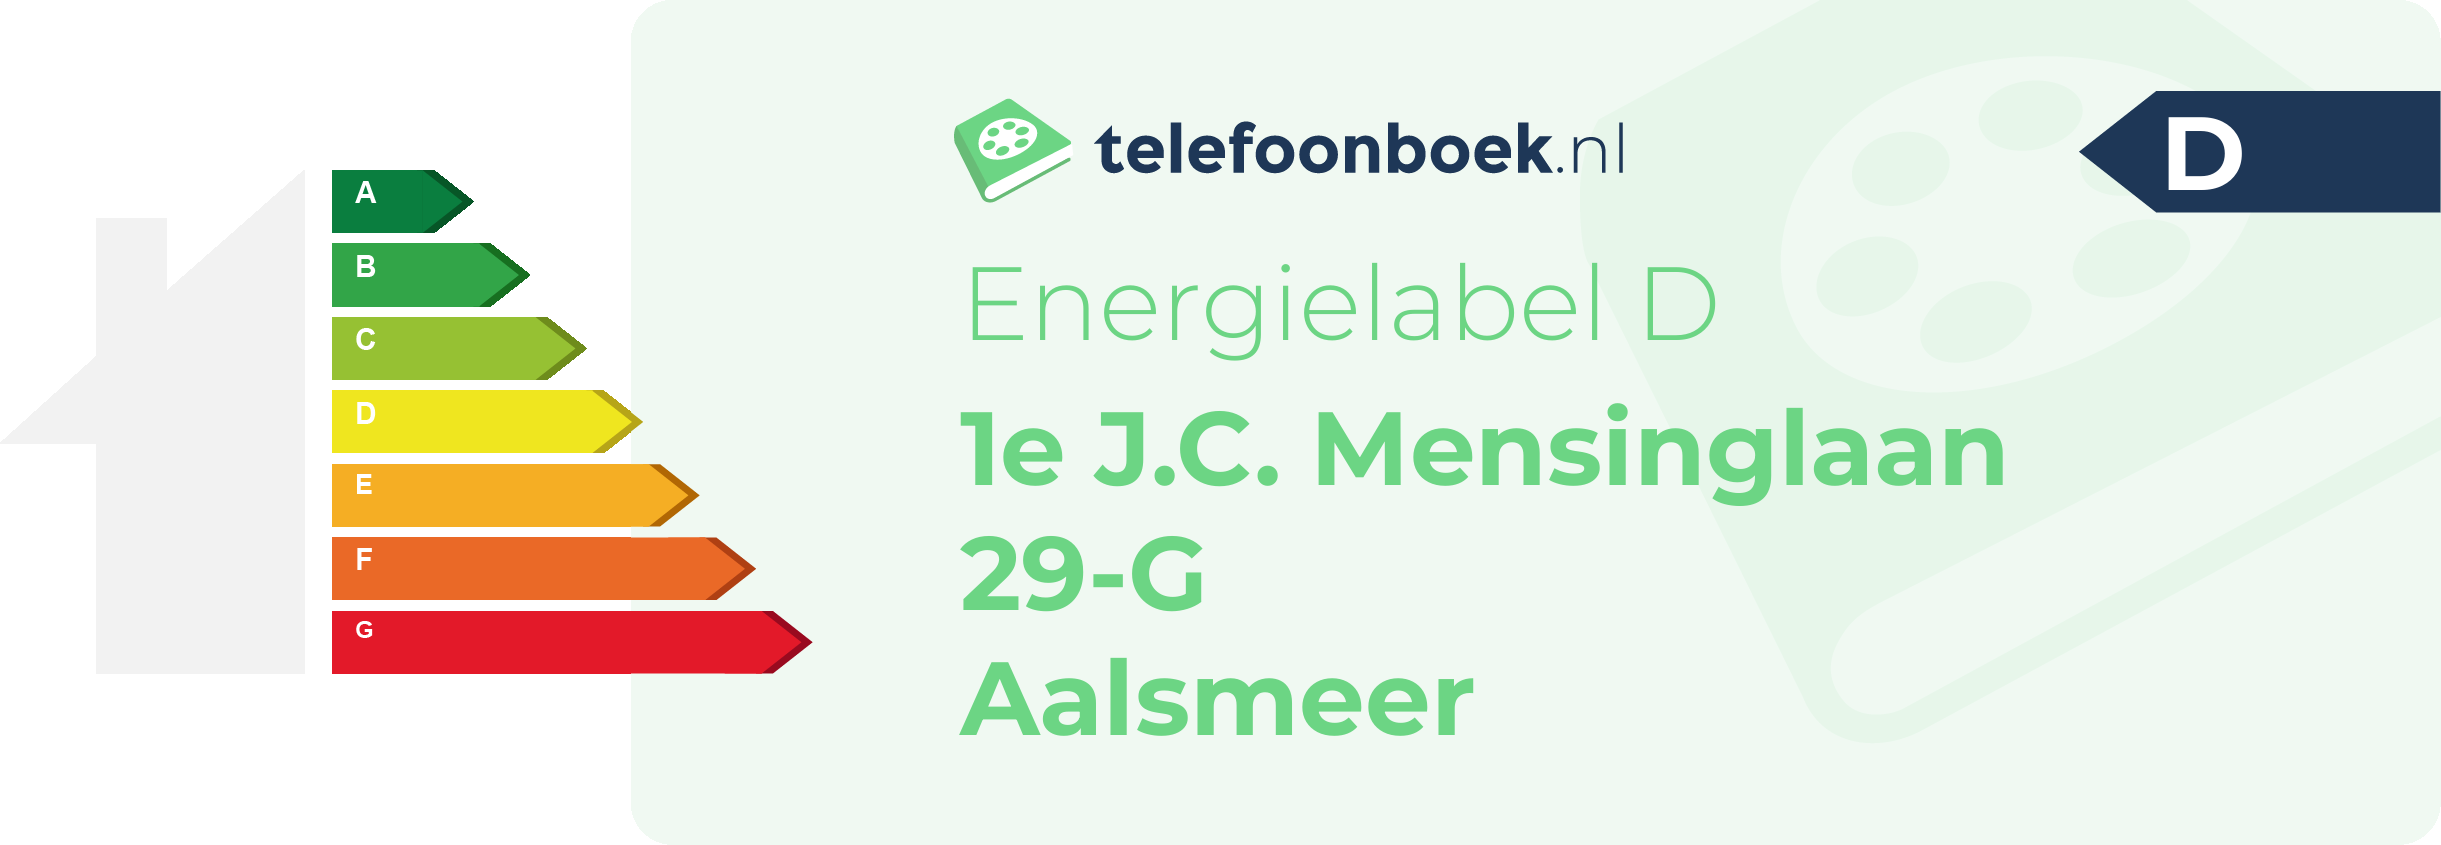 Energielabel 1e J.C. Mensinglaan 29-G Aalsmeer